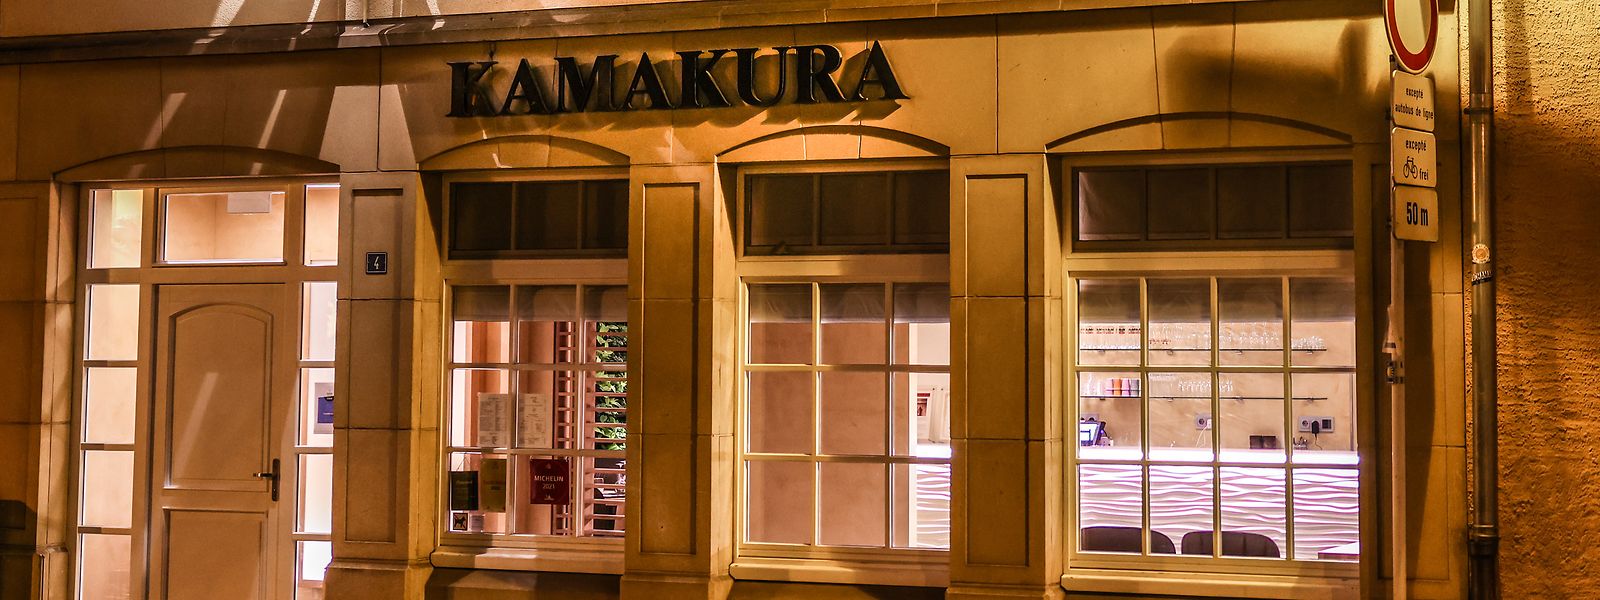 Seit 1988 ist das Kamakura eine beliebte Adresse in der Rue Münster.